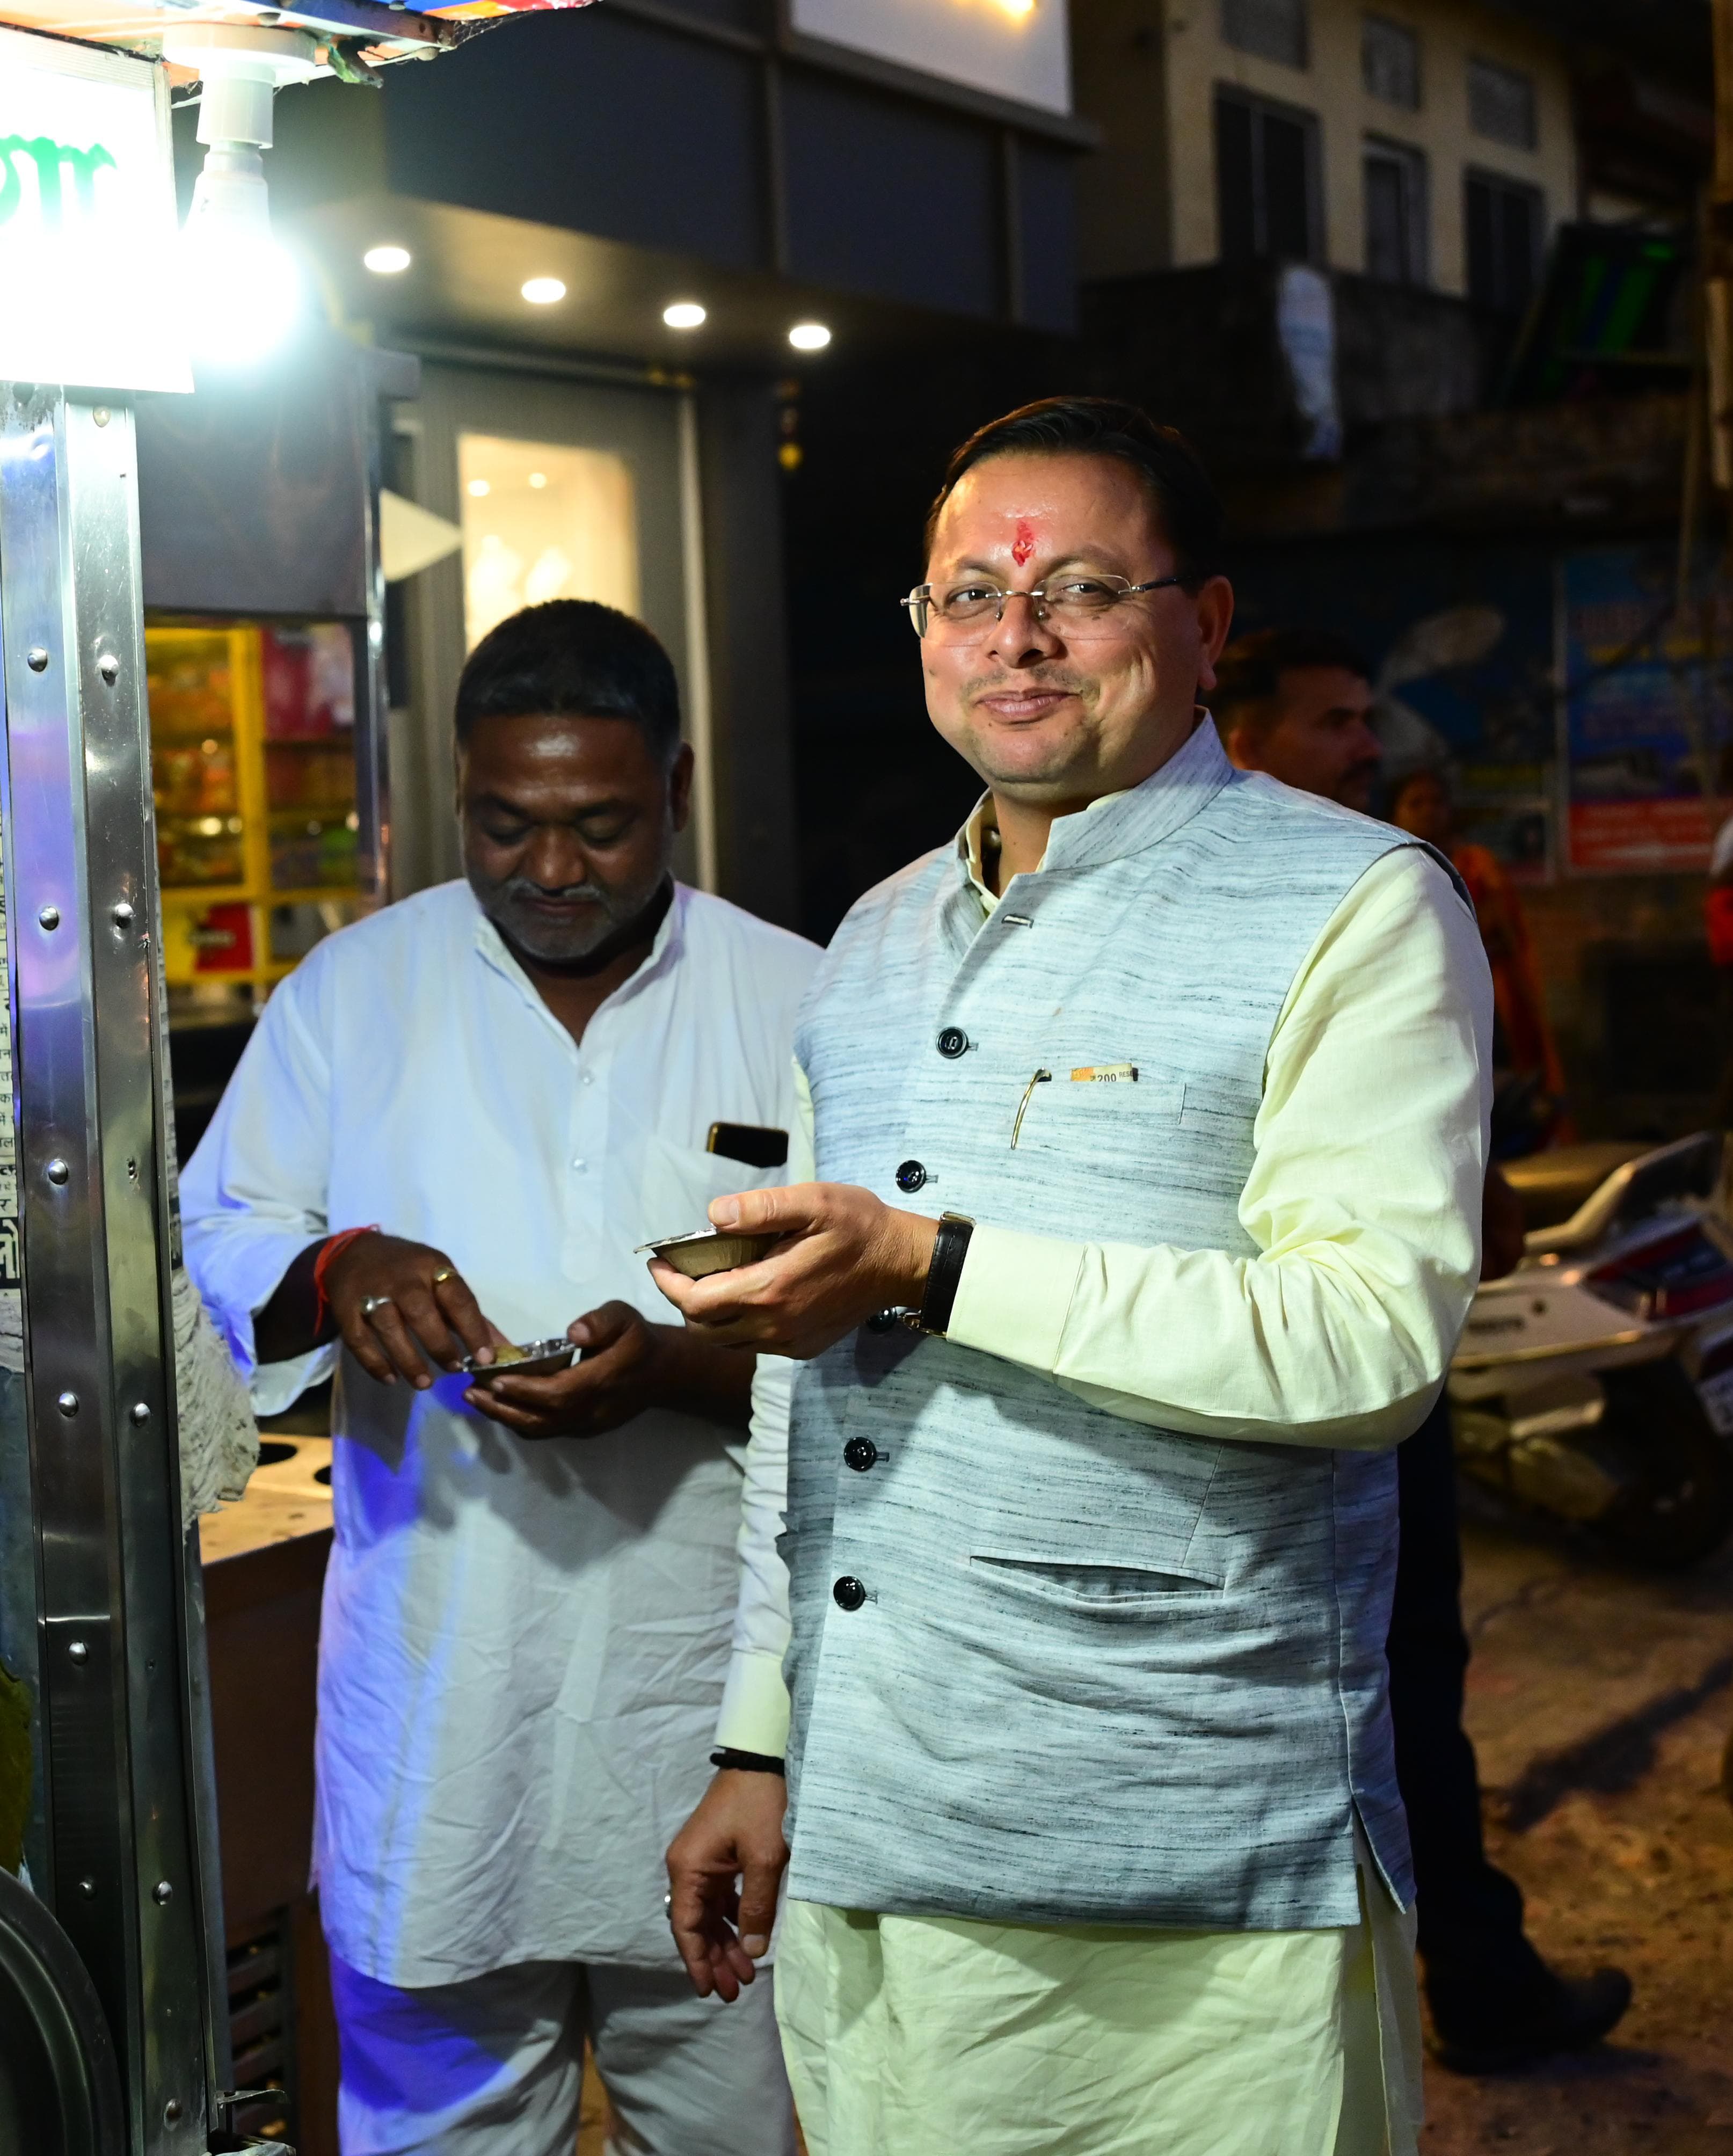 मुख्यमंत्री धामी खटीमा बाजार में चाट का आनंद लेते हुए।